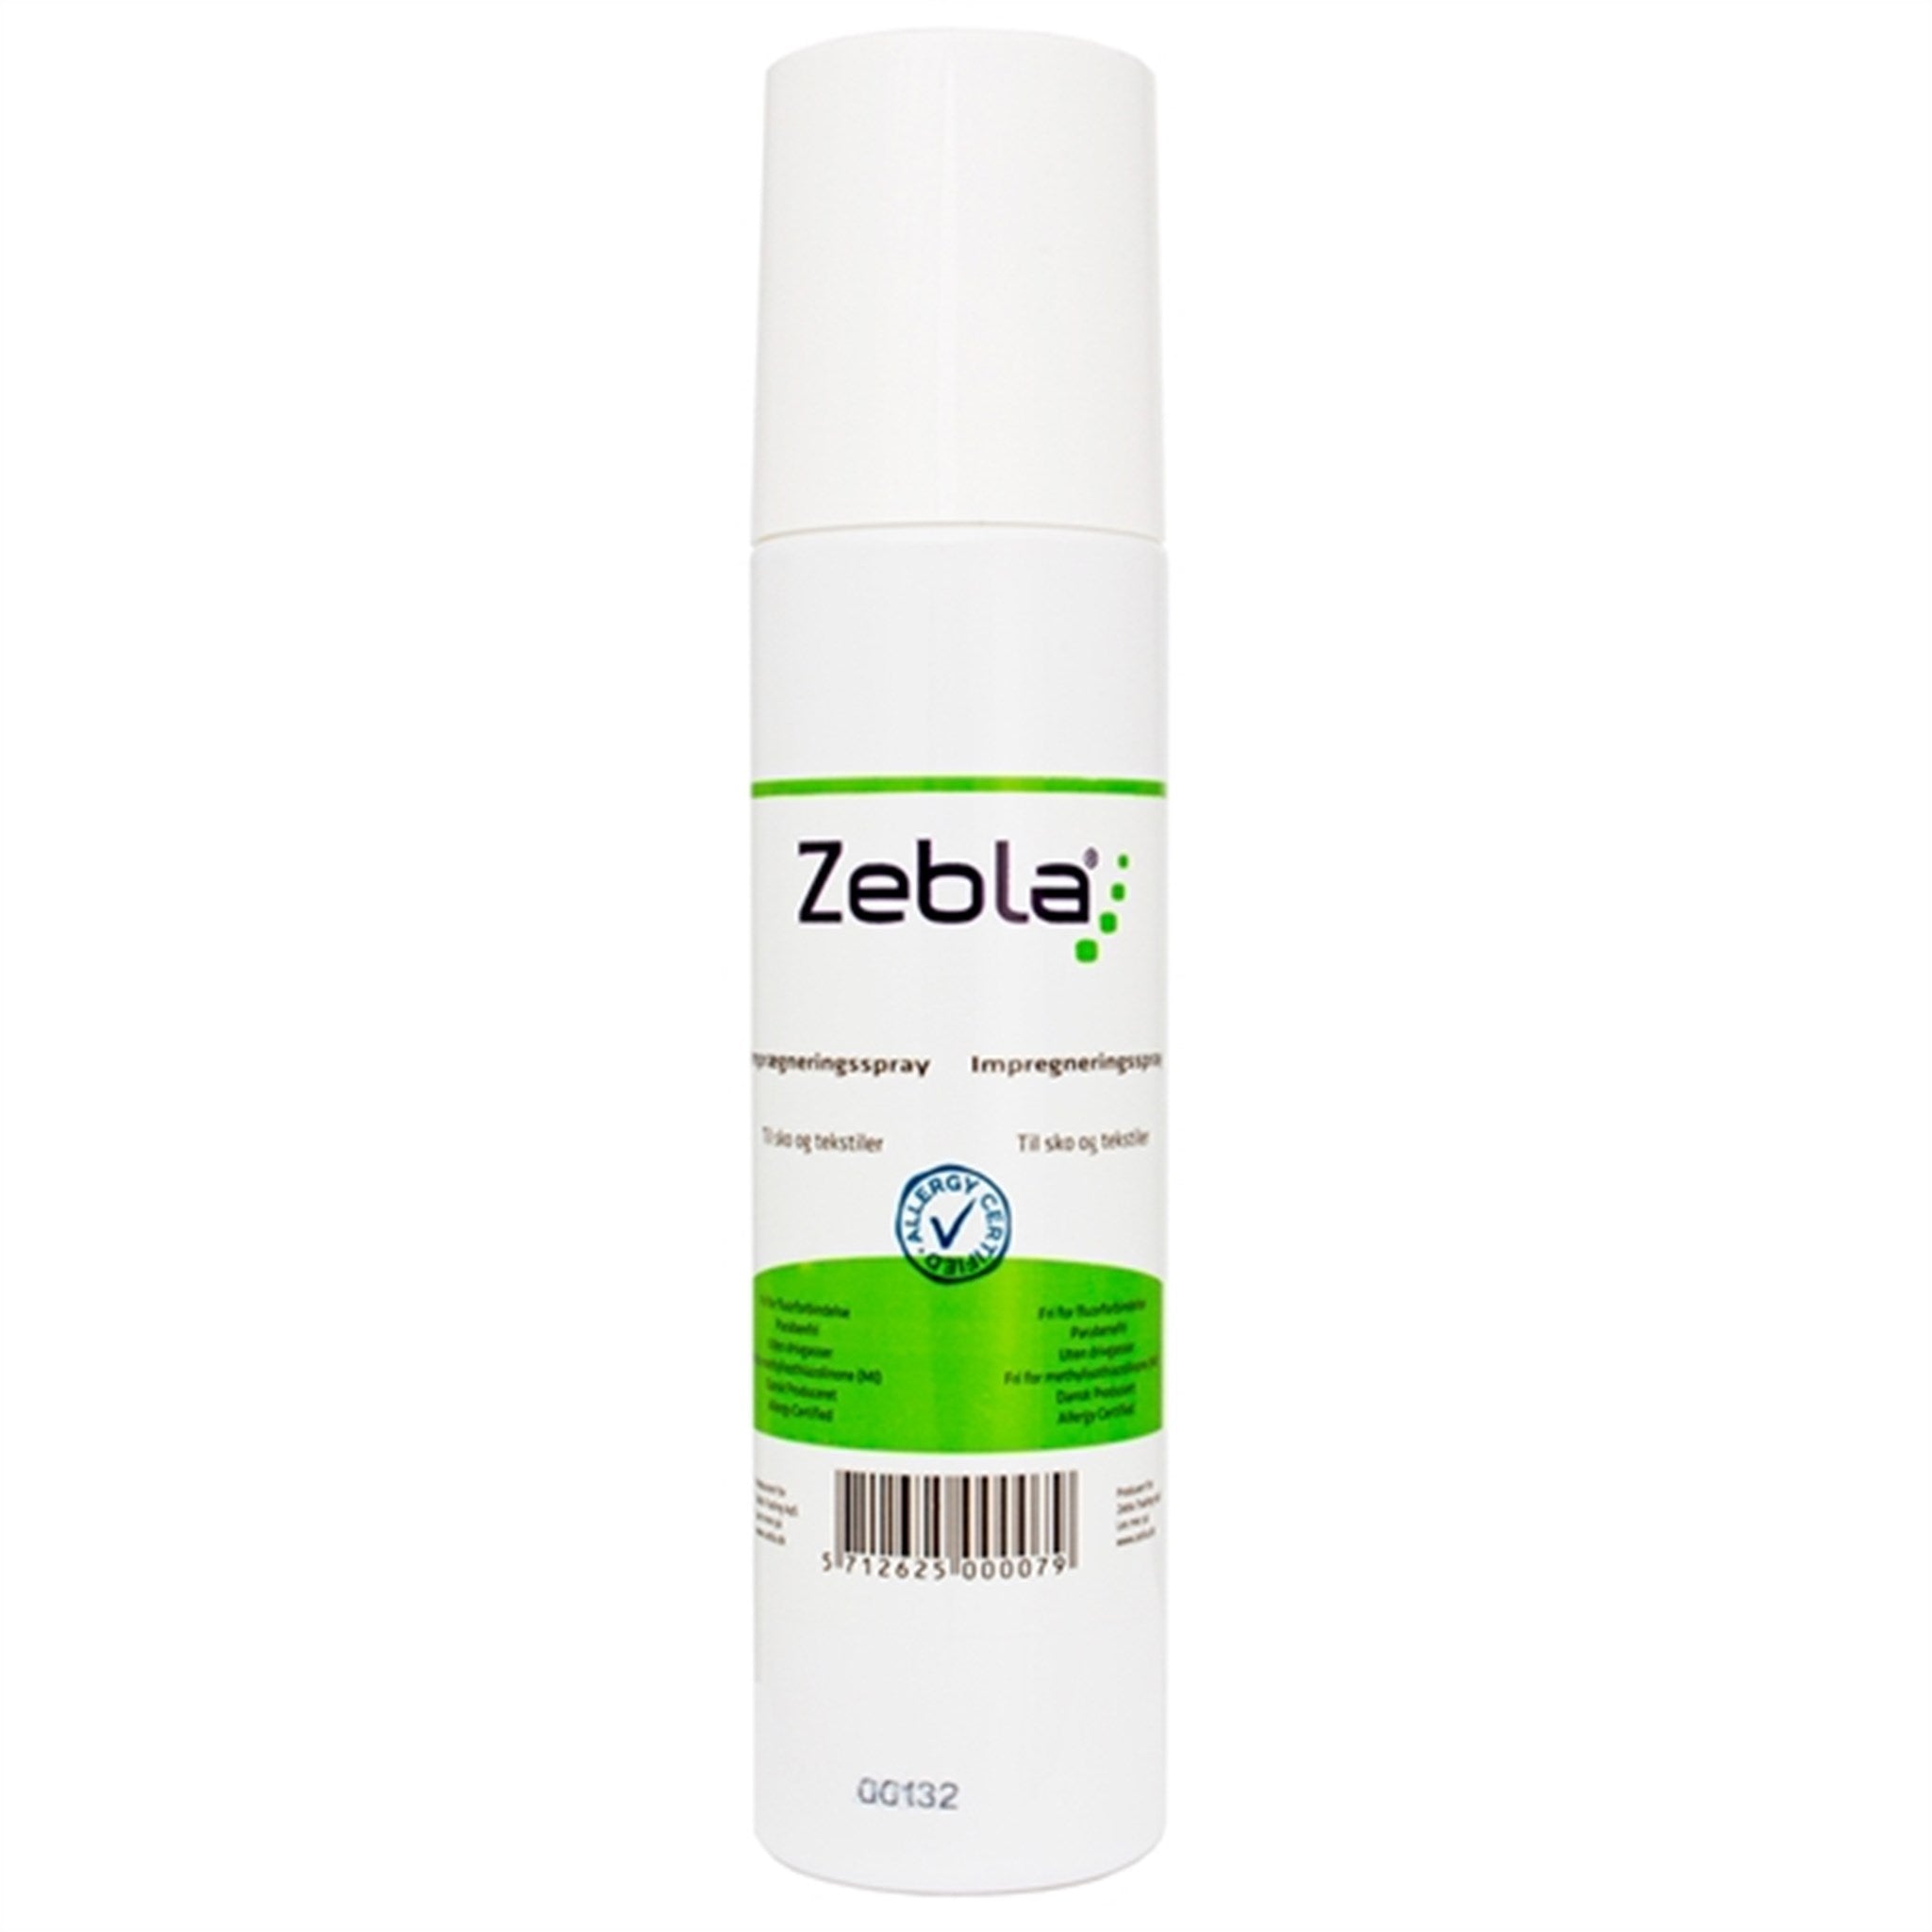 用Zebla防水喷雾300毫升保护您的宝贝